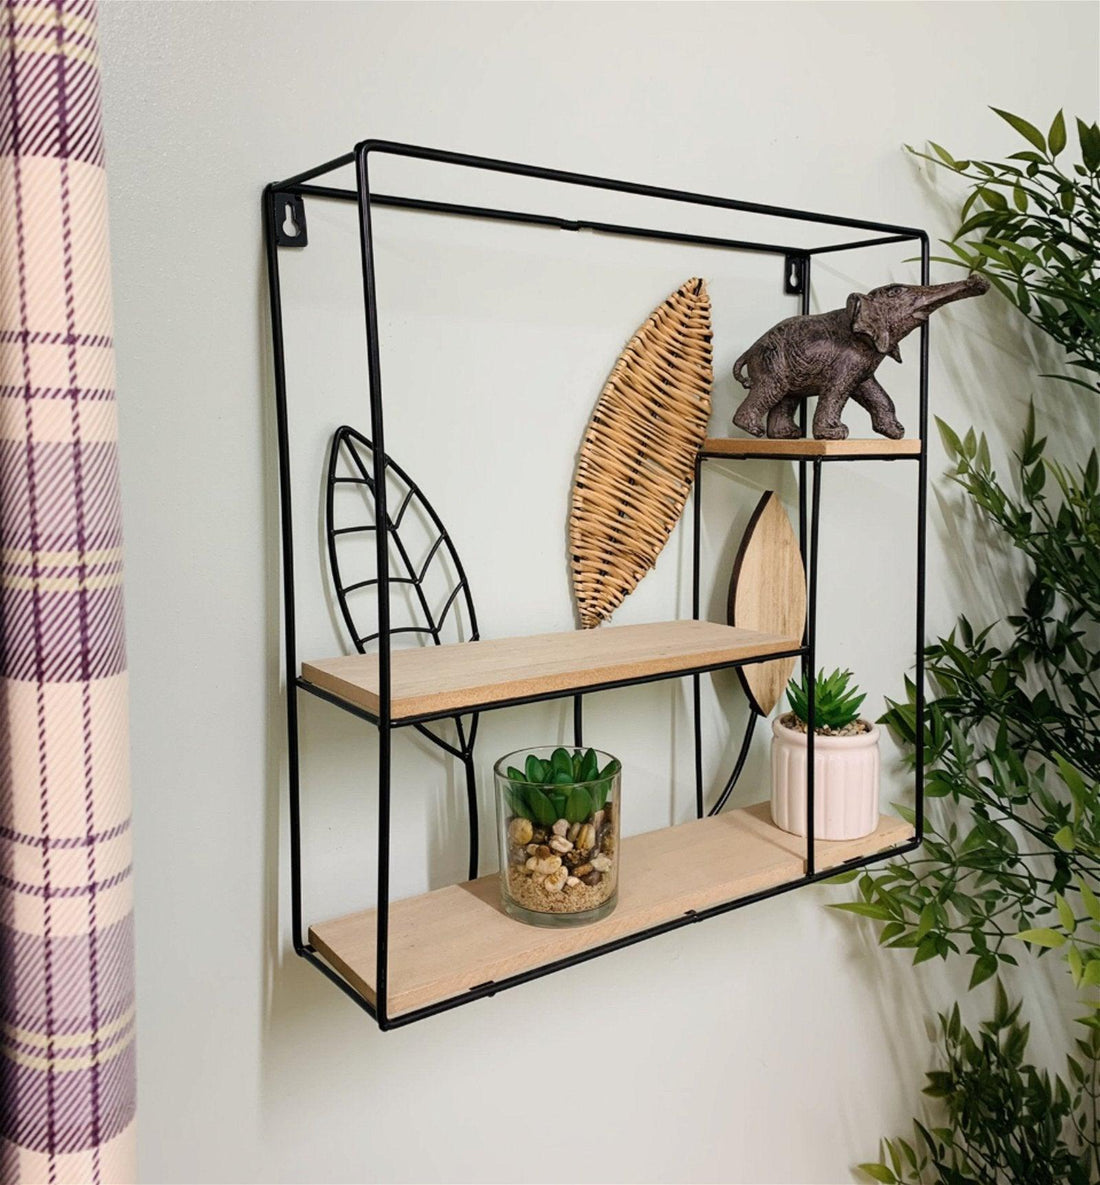 Square Metal Framed Rattan Leaf Shelf Unit - £76.99 - Wall Hanging Shelving 